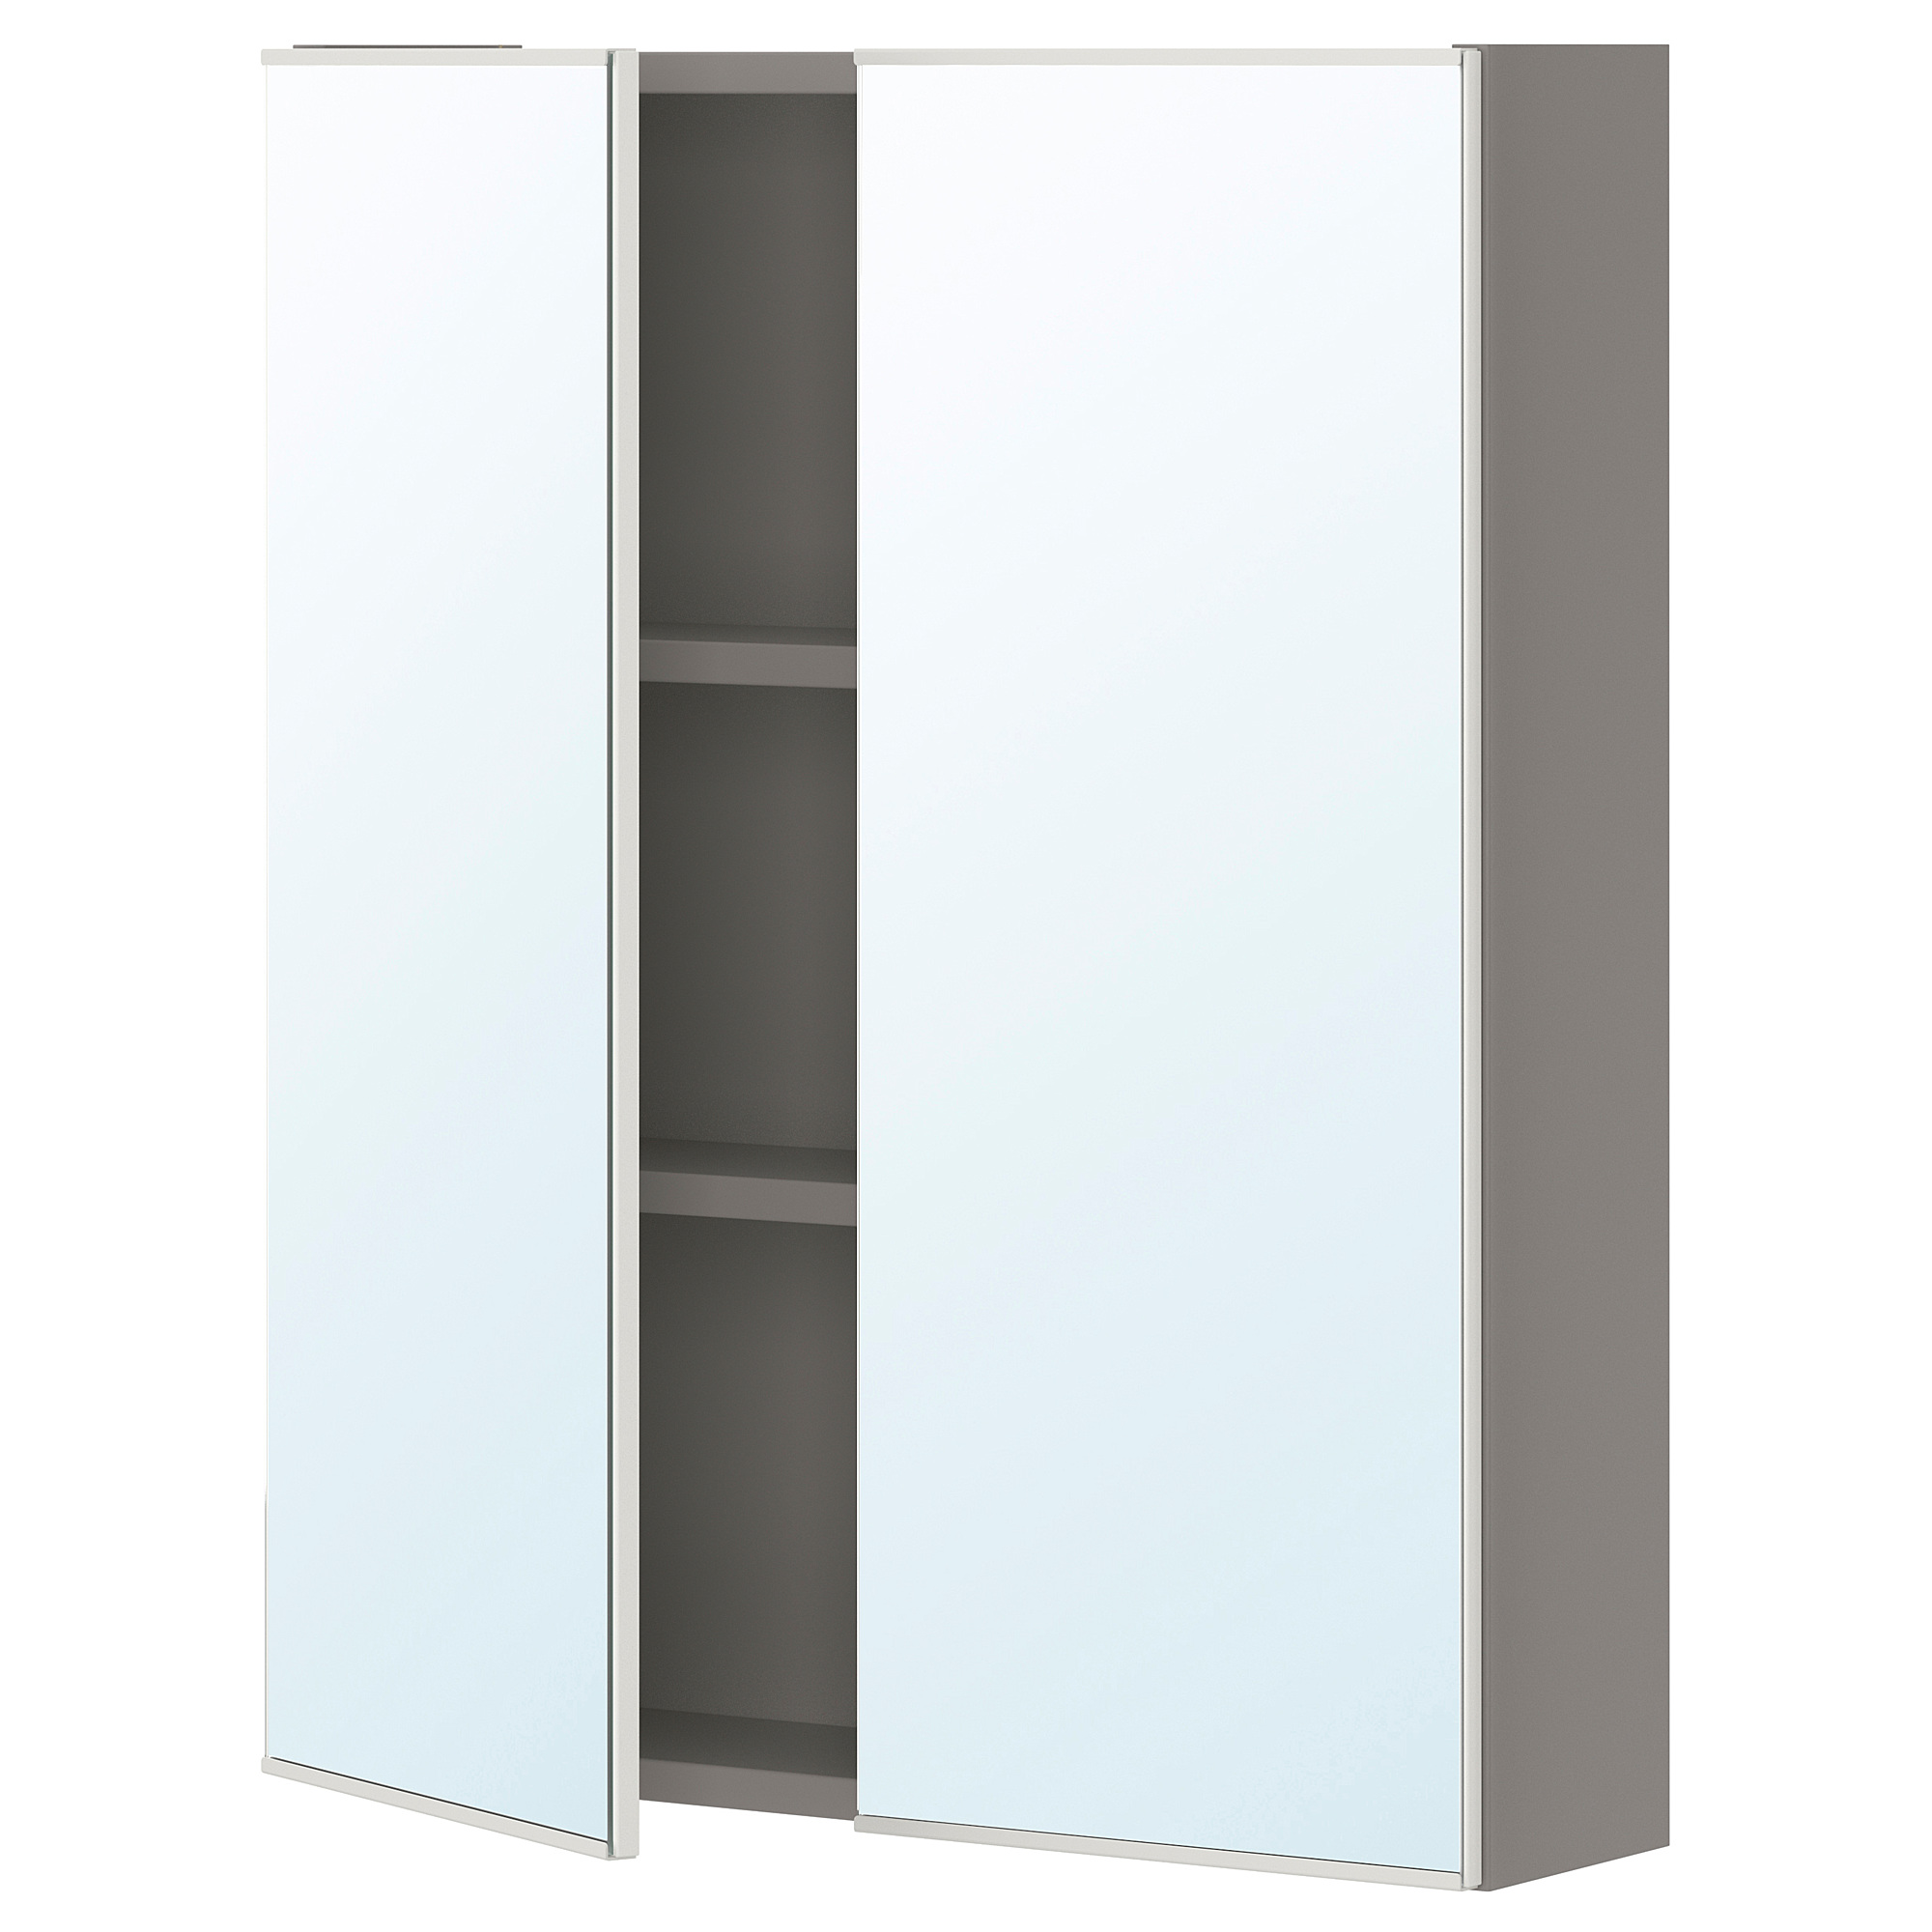 ENHET mirror cabinet with 2 doors